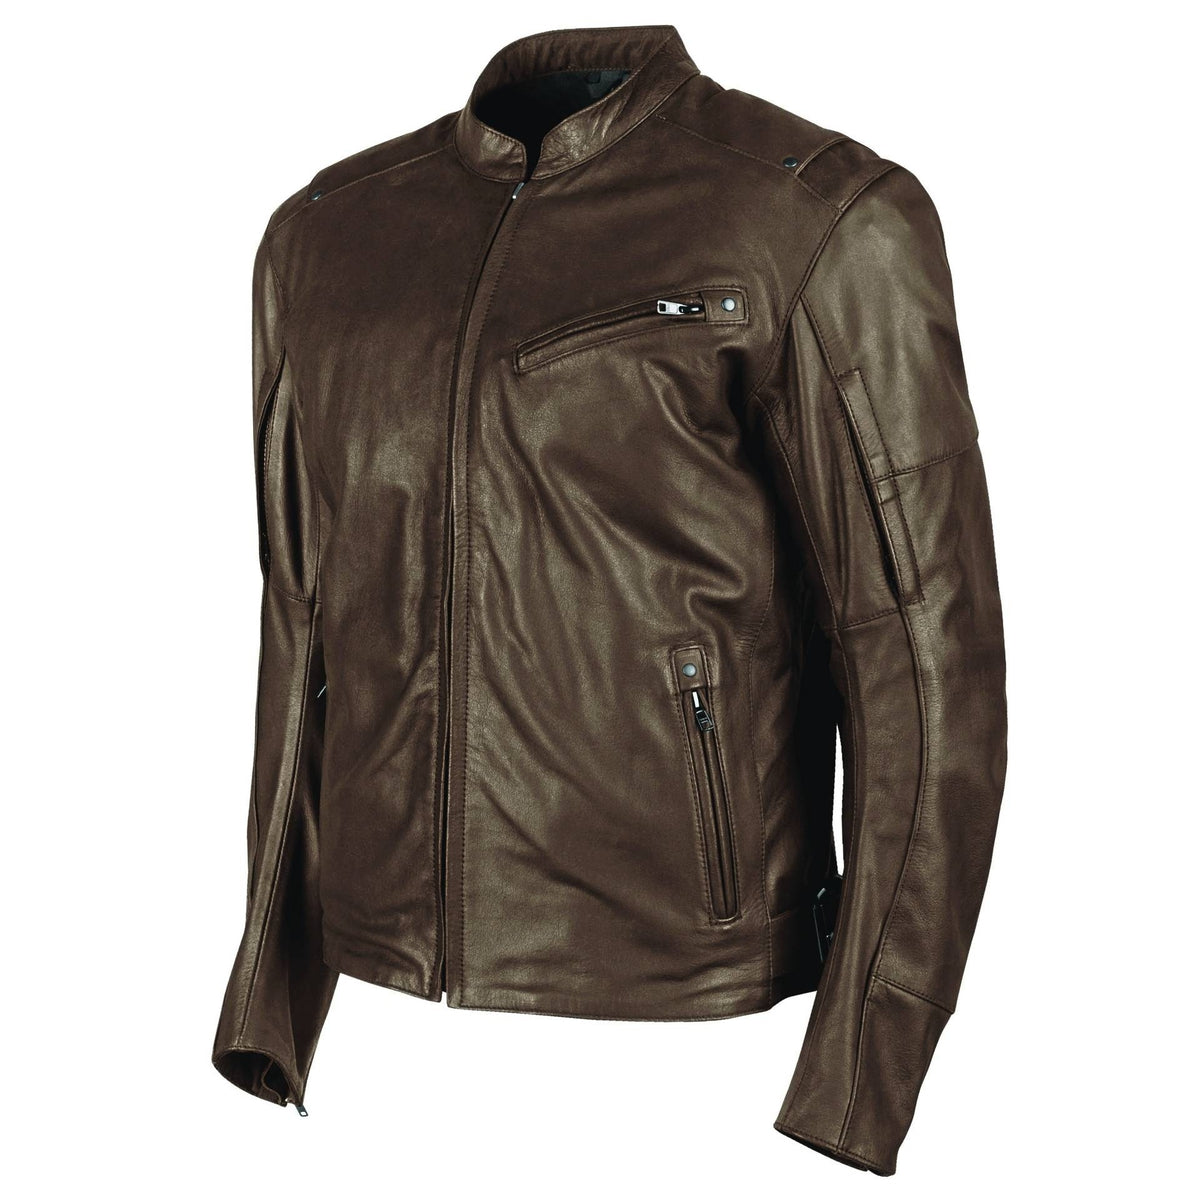 Joe Rocket Powerglide Leather Jacket